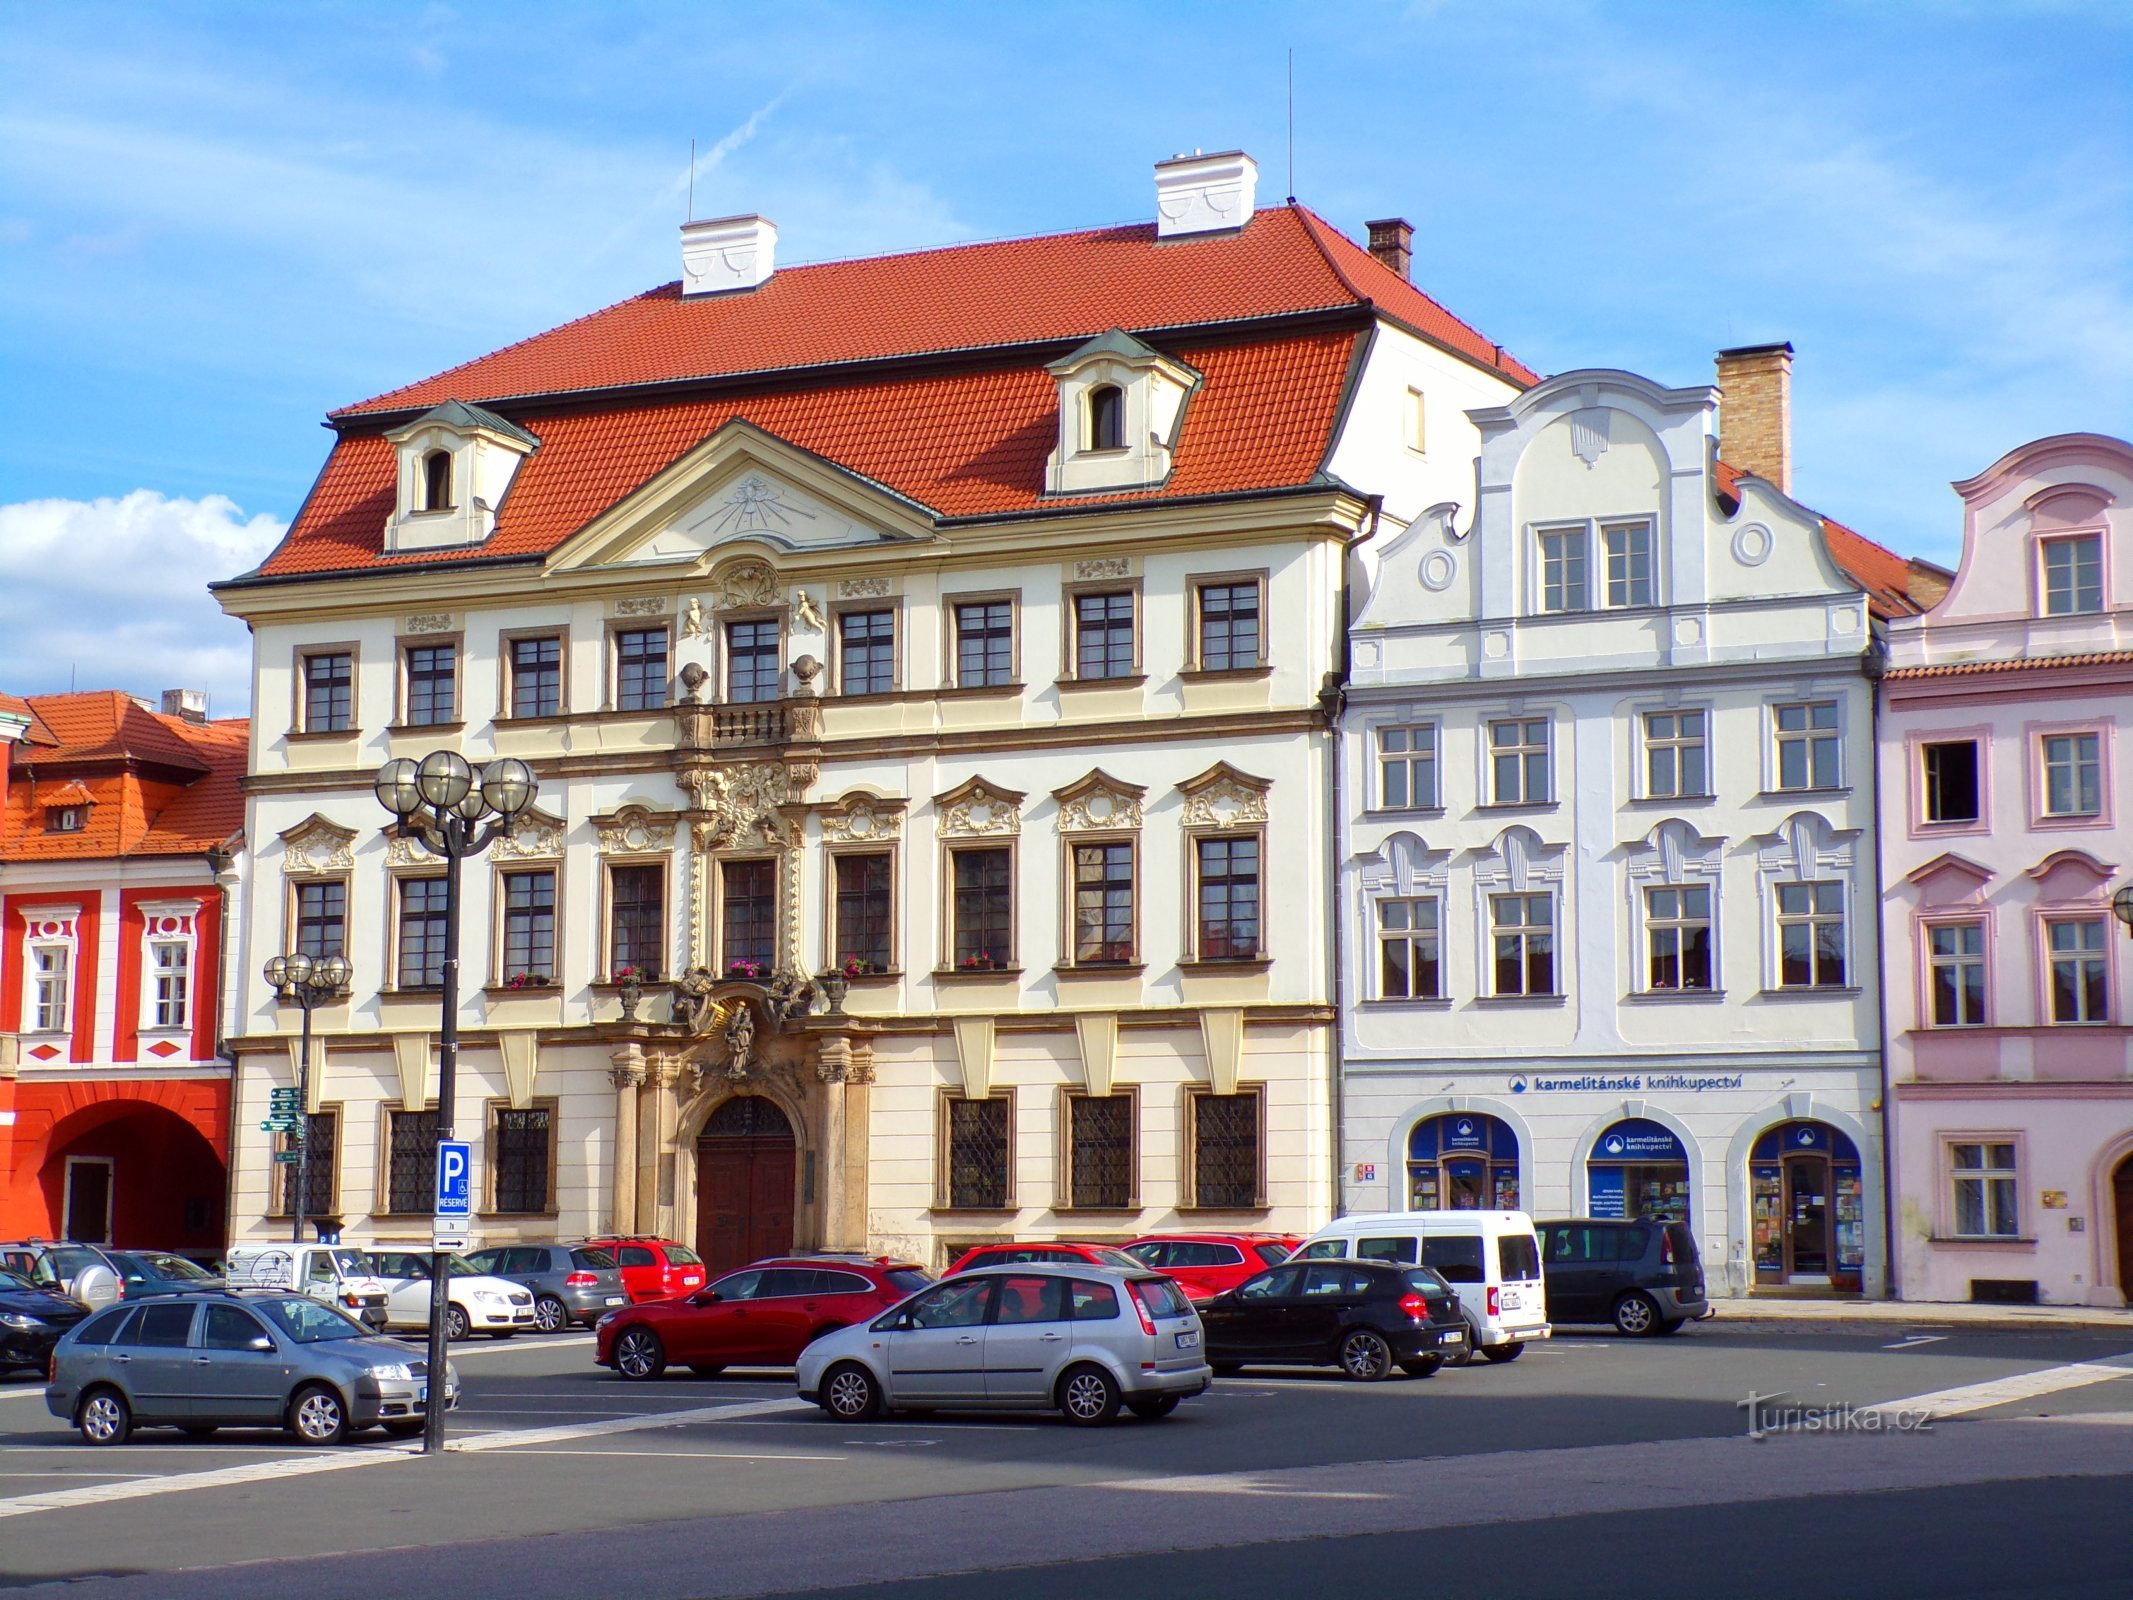 Velké náměstí nr. 35-36 (Hradec Králové, 17.6.2022. april XNUMX)